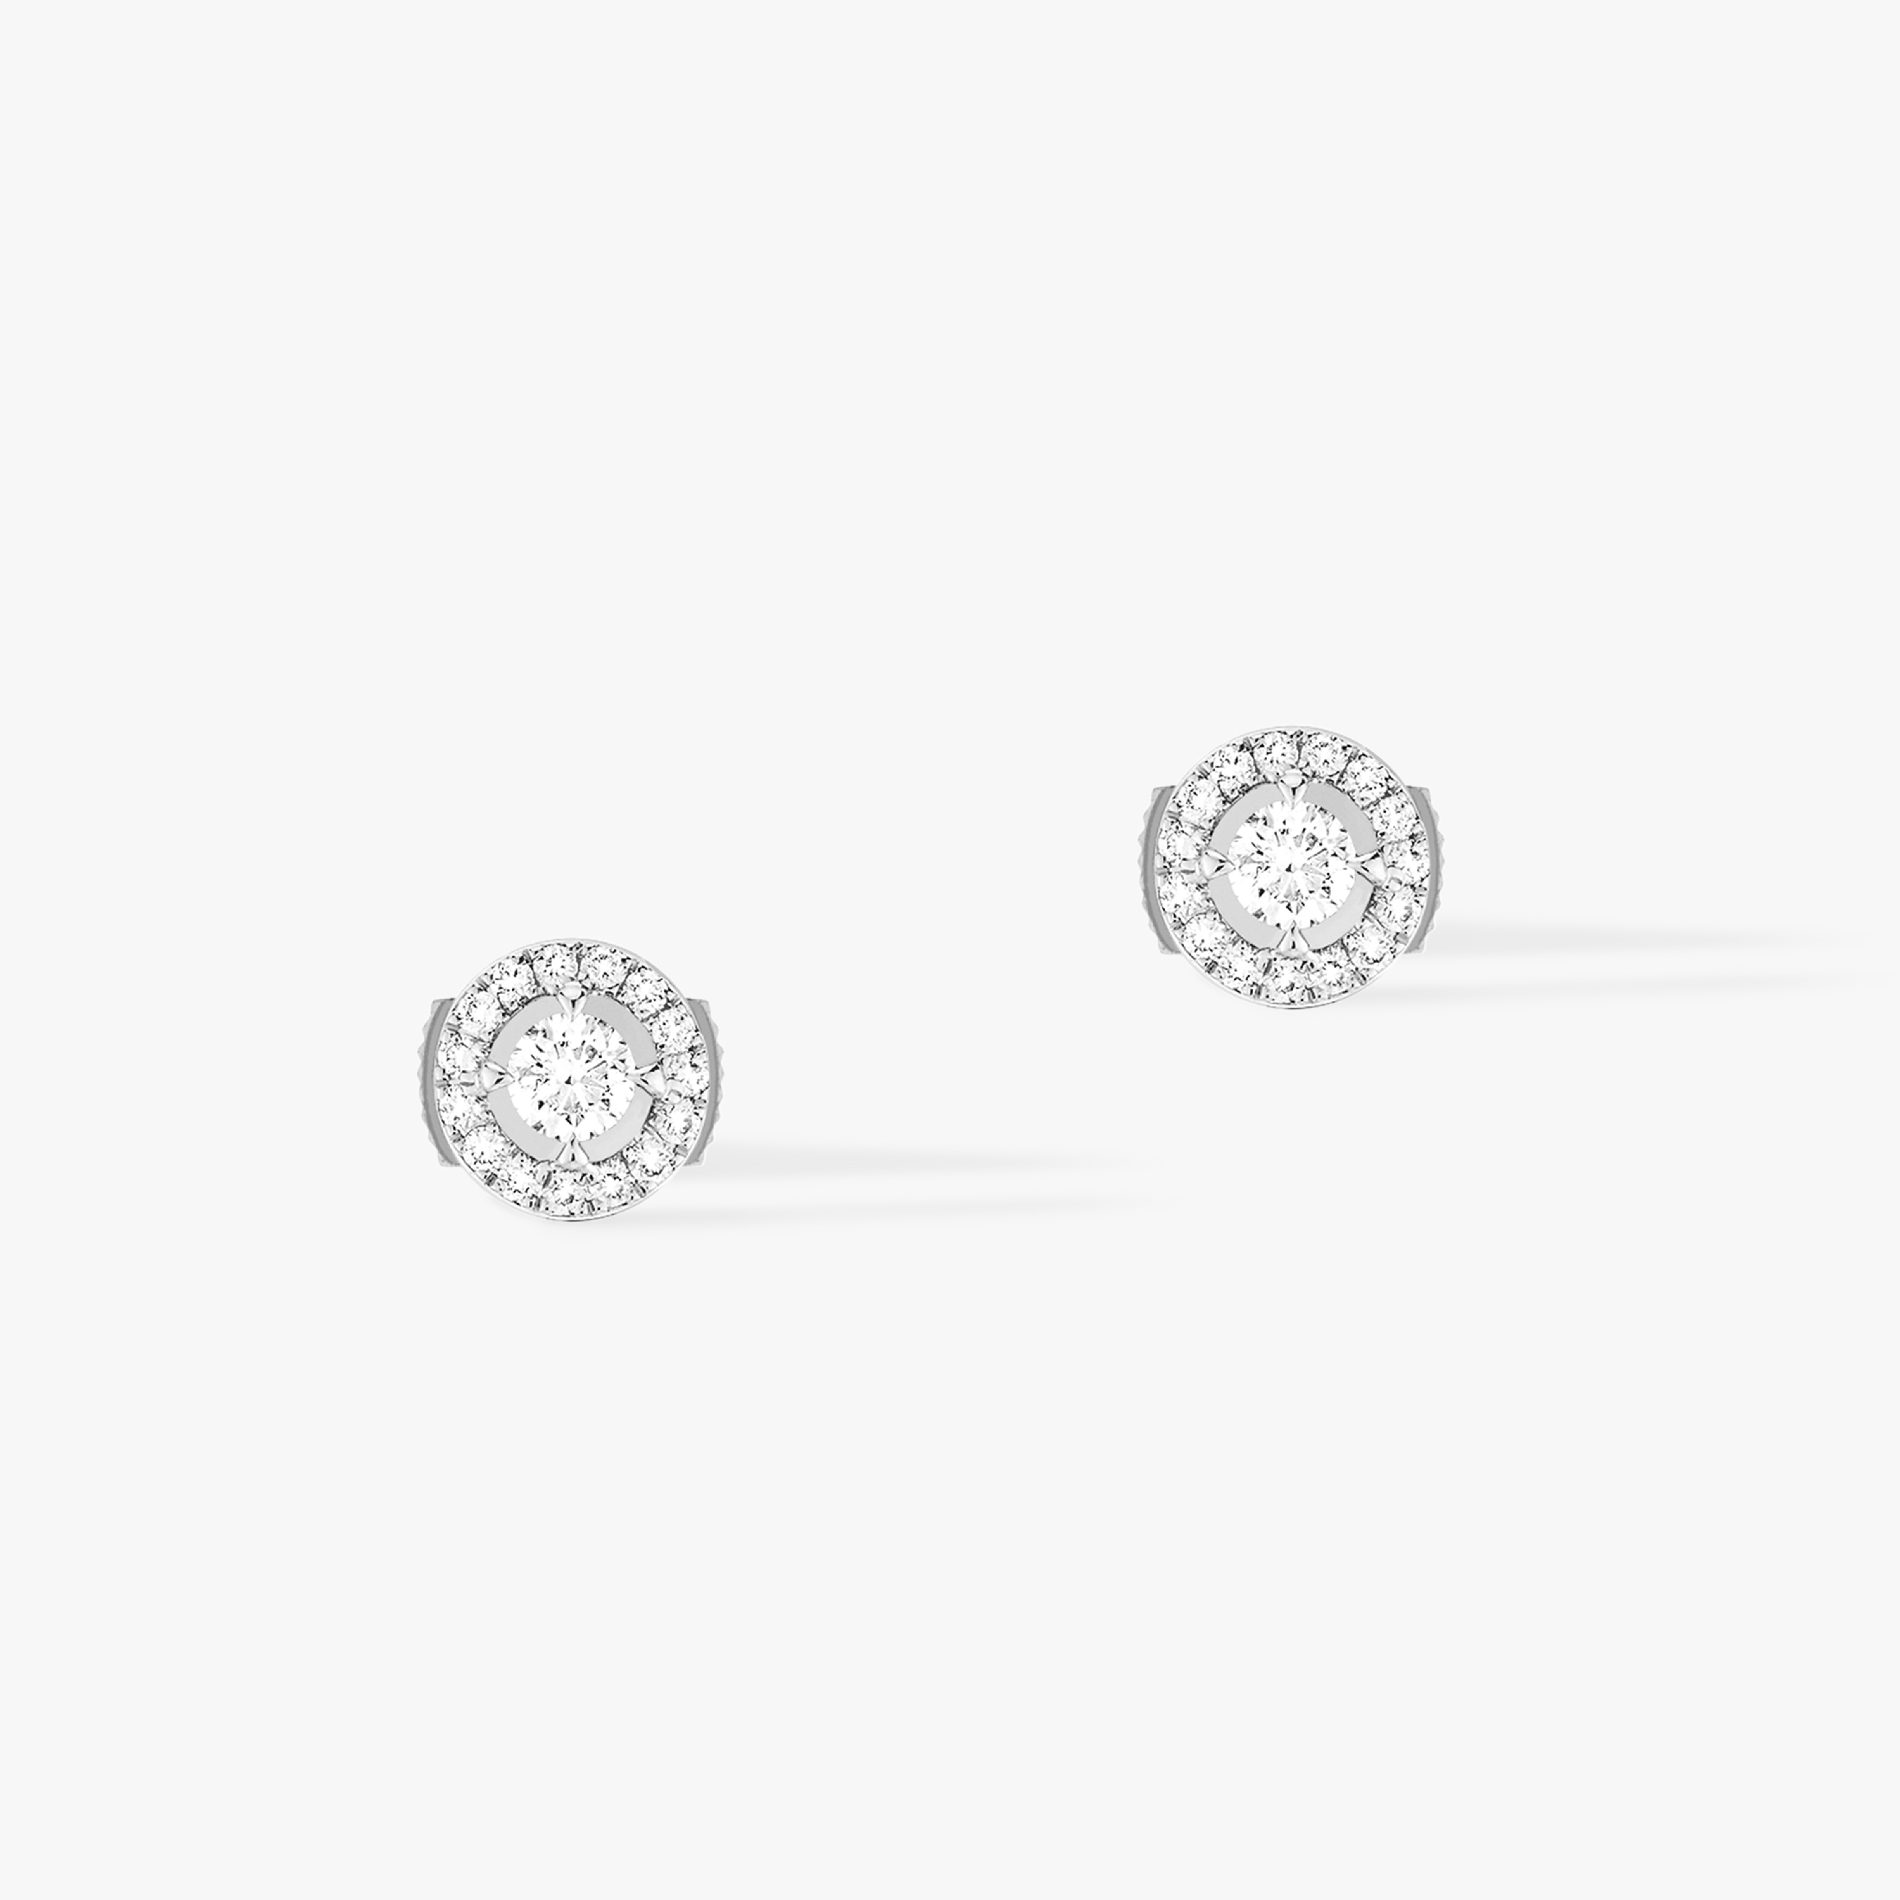 Boucles d'oreilles Femme Or Blanc Diamant Joy Diamants Ronds 0,10ct 06991-WG